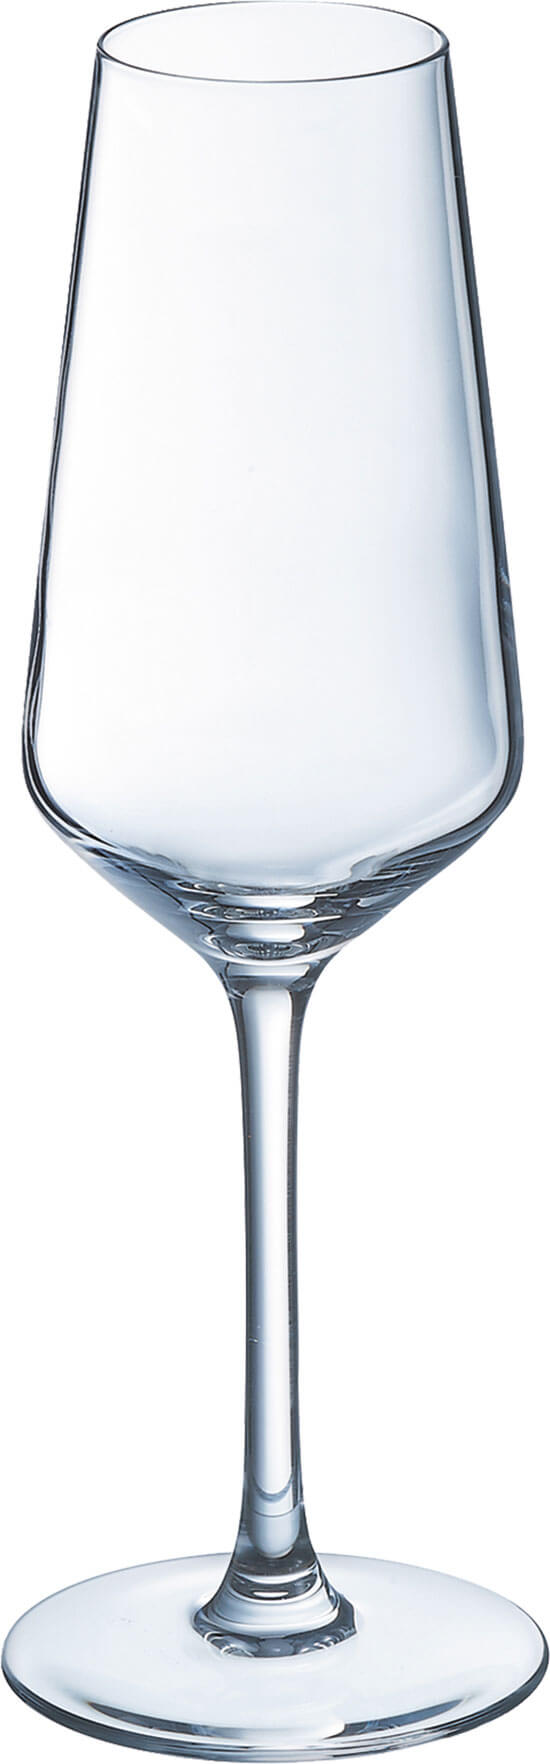 Sektglas Vina Juliette, Arcoroc - 230ml, 0,1l Eiche (1 Stk.)